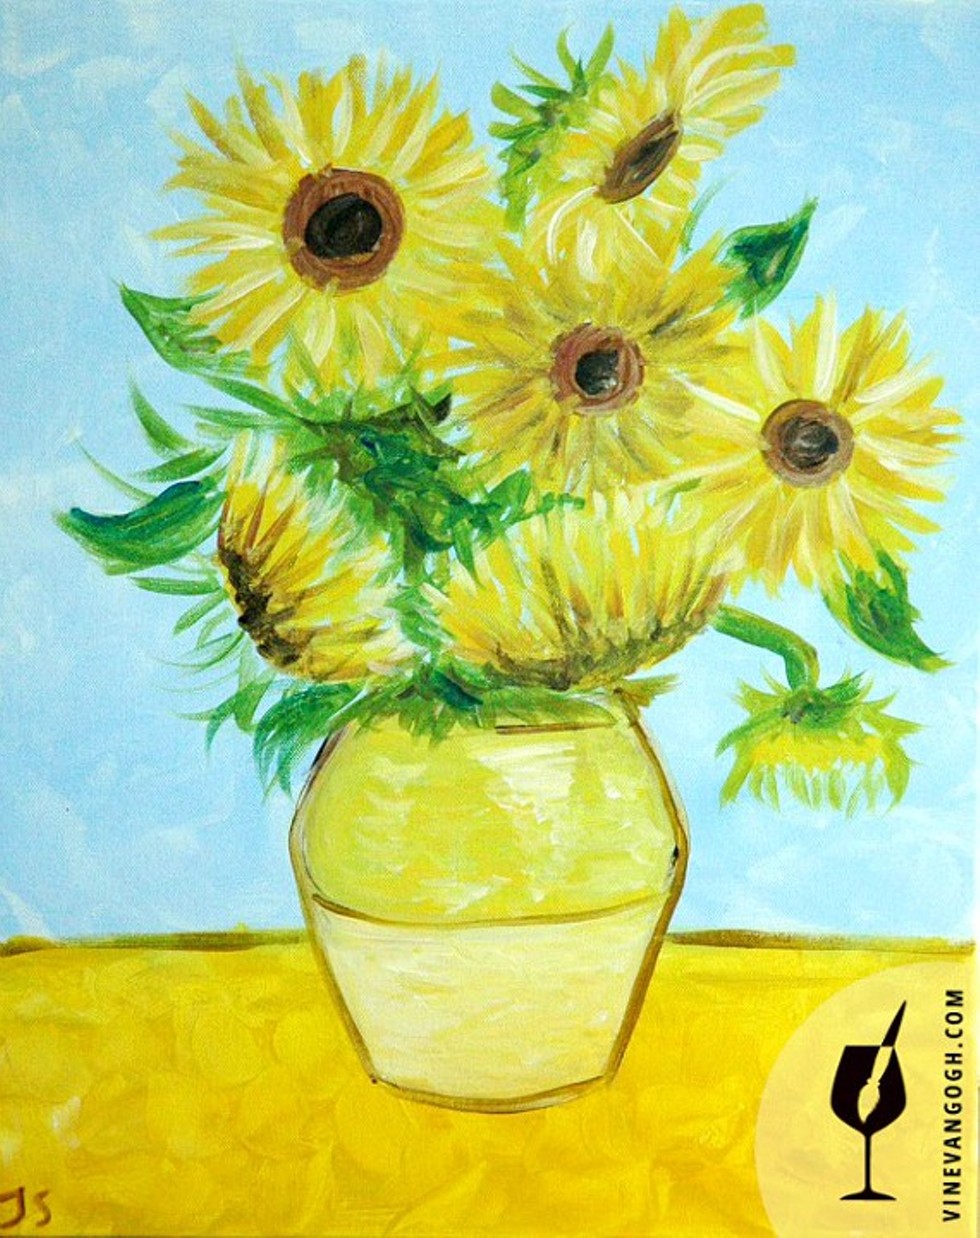 7cef8569_van_gogh_s_sunflowers-_easy-_jamie_wm.jpg